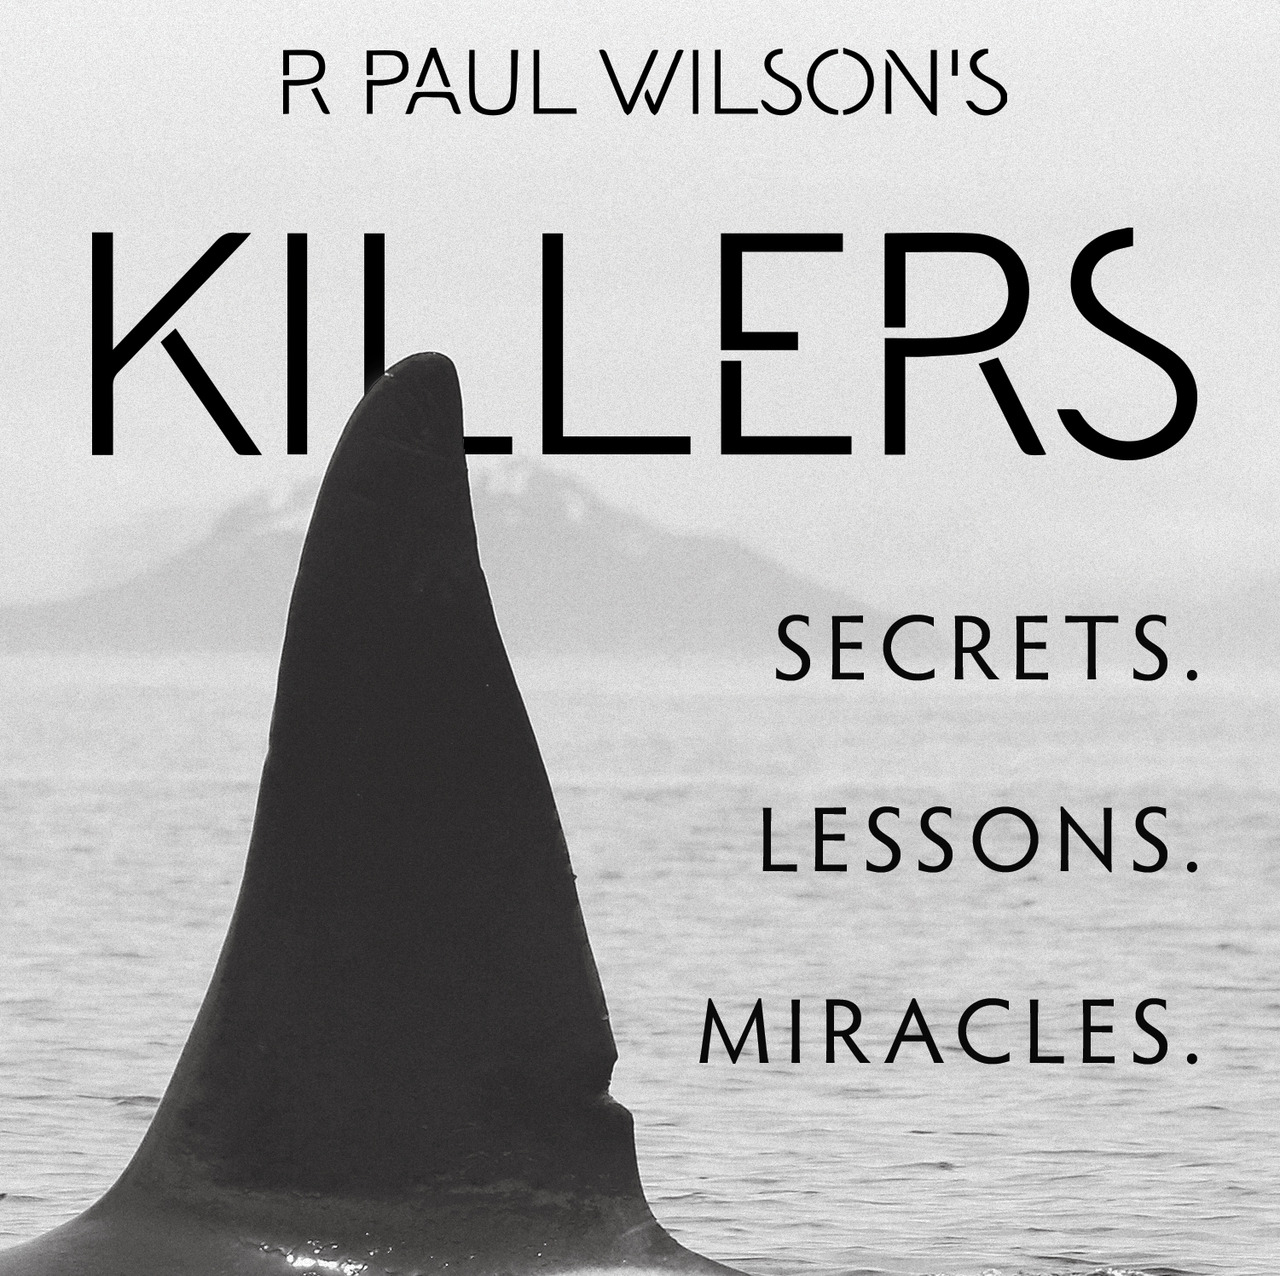 R. Paul Wilson - Killers